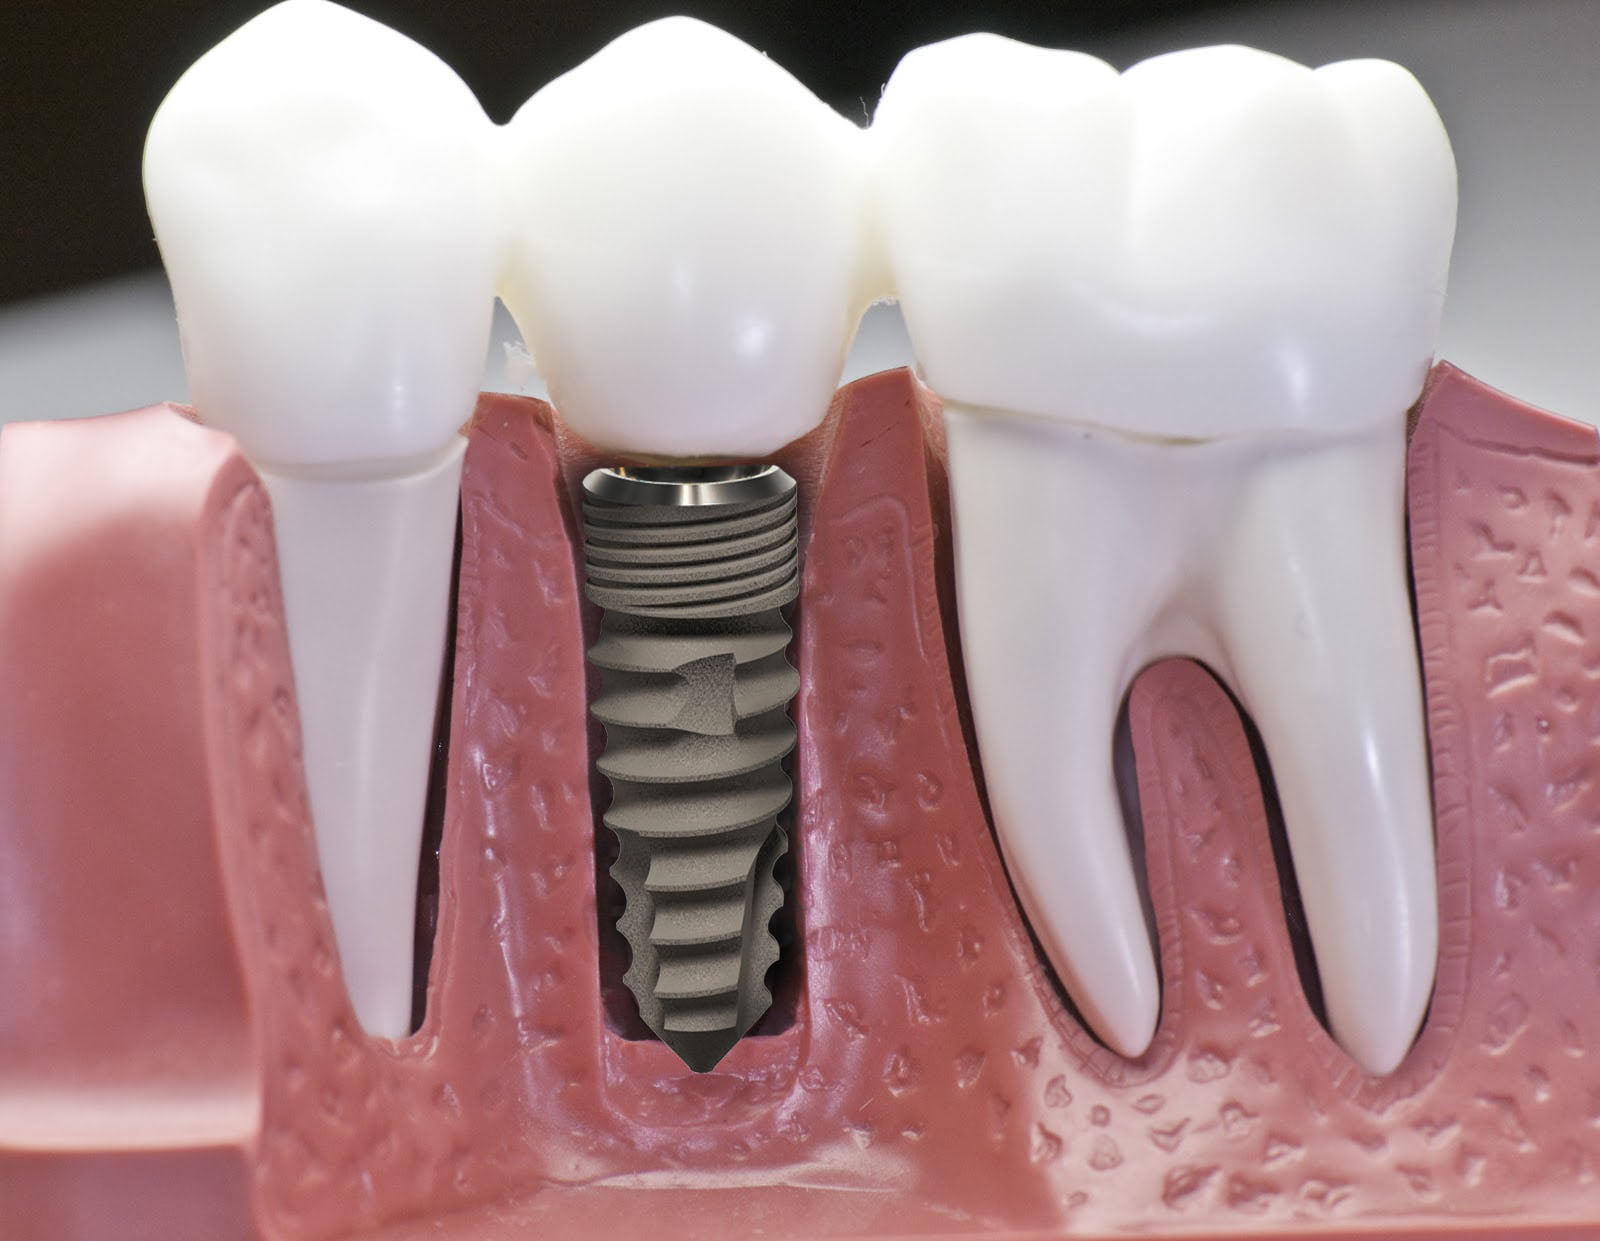 Răng cấy ghép implant và răng thường